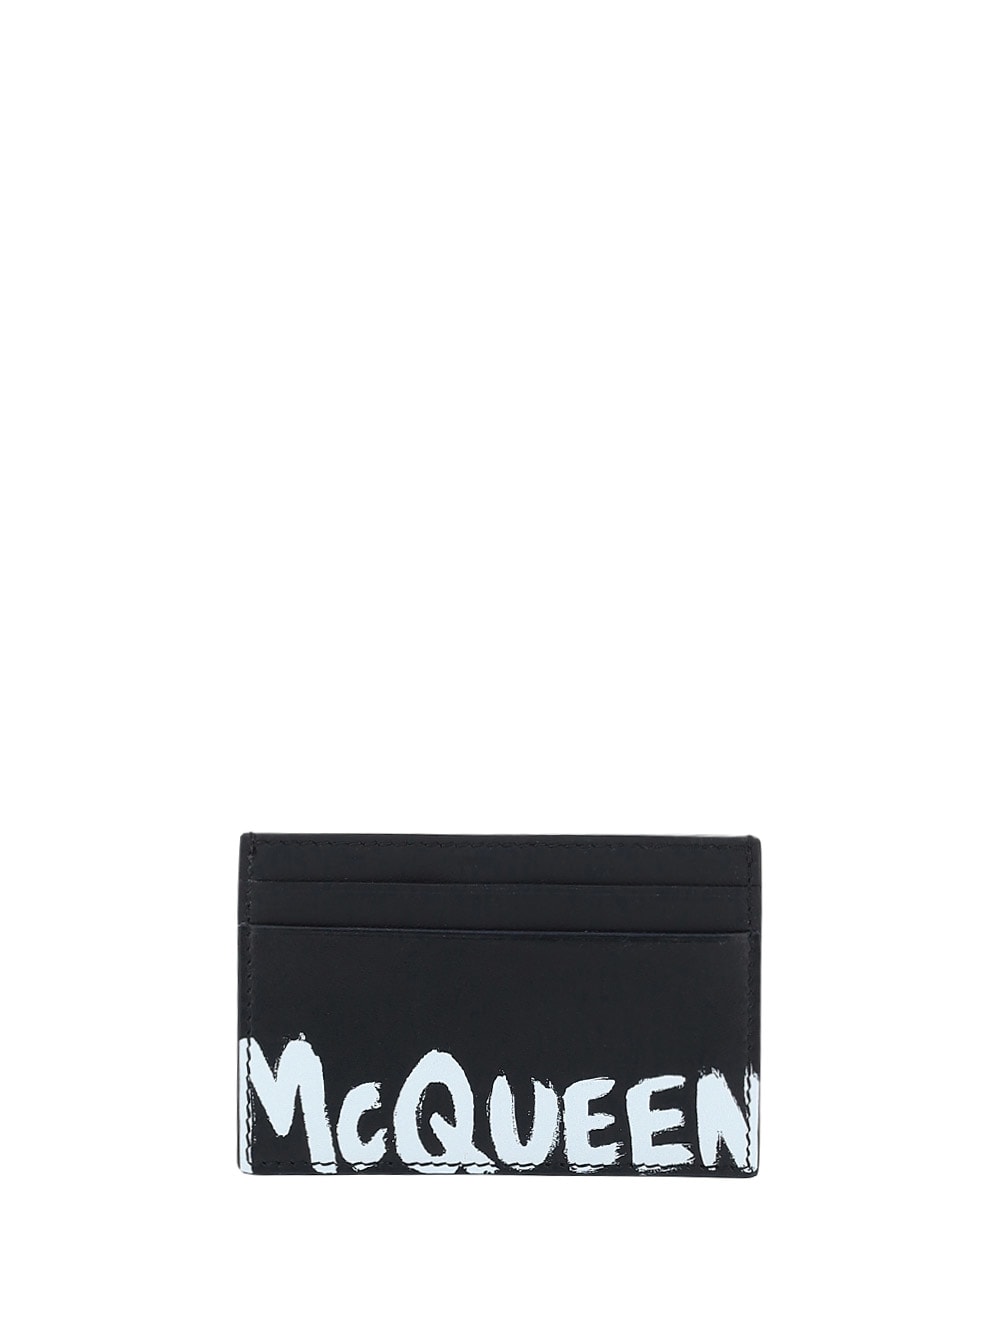 Alexander McQueen Graffiti Print Card Holder